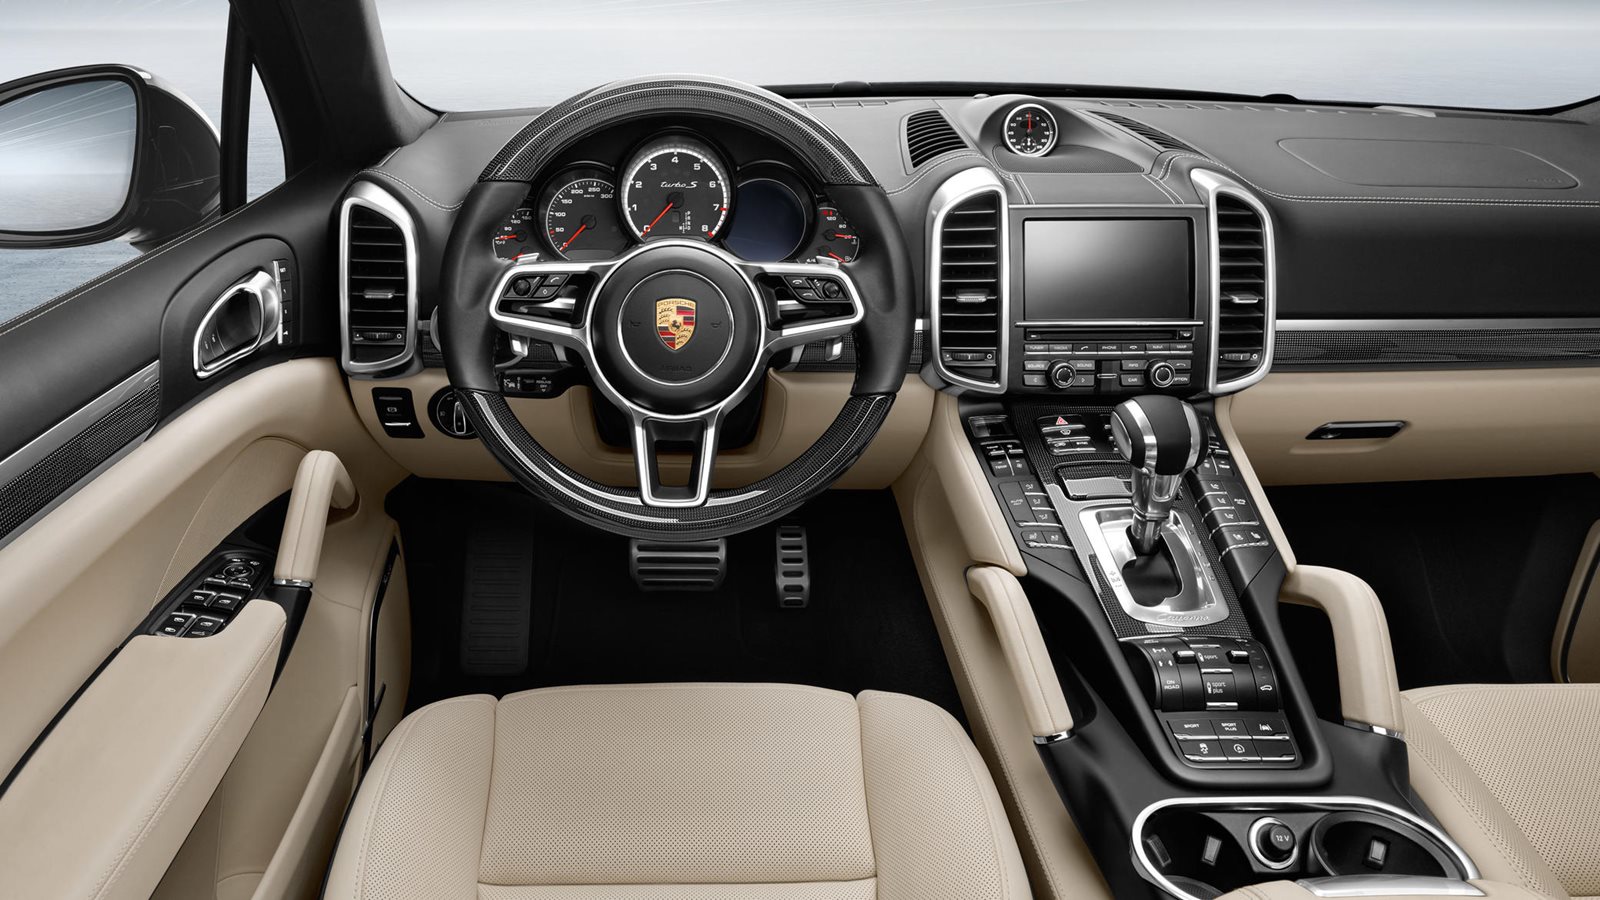 2015 Porsche Cayenne Turbo Steering Wheel